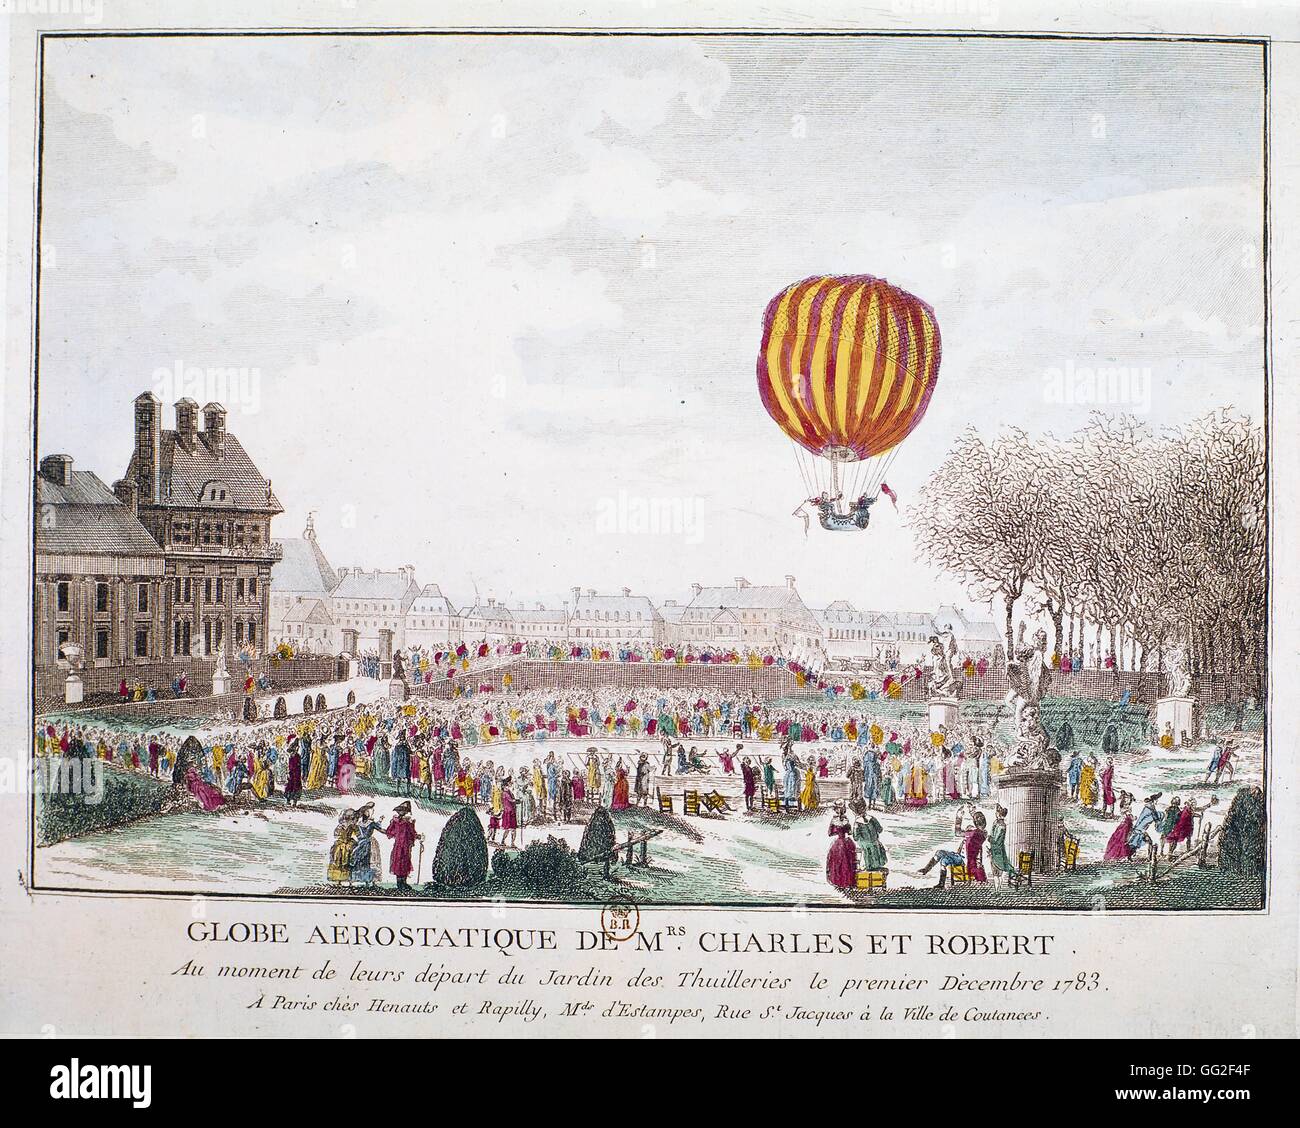 La partenza dei signori Charles e Robert della balloon. Parigi. Jardin des Tuileries Dicembre 1, 1783 Francia Parigi. Bibliothèque nationale Foto Stock